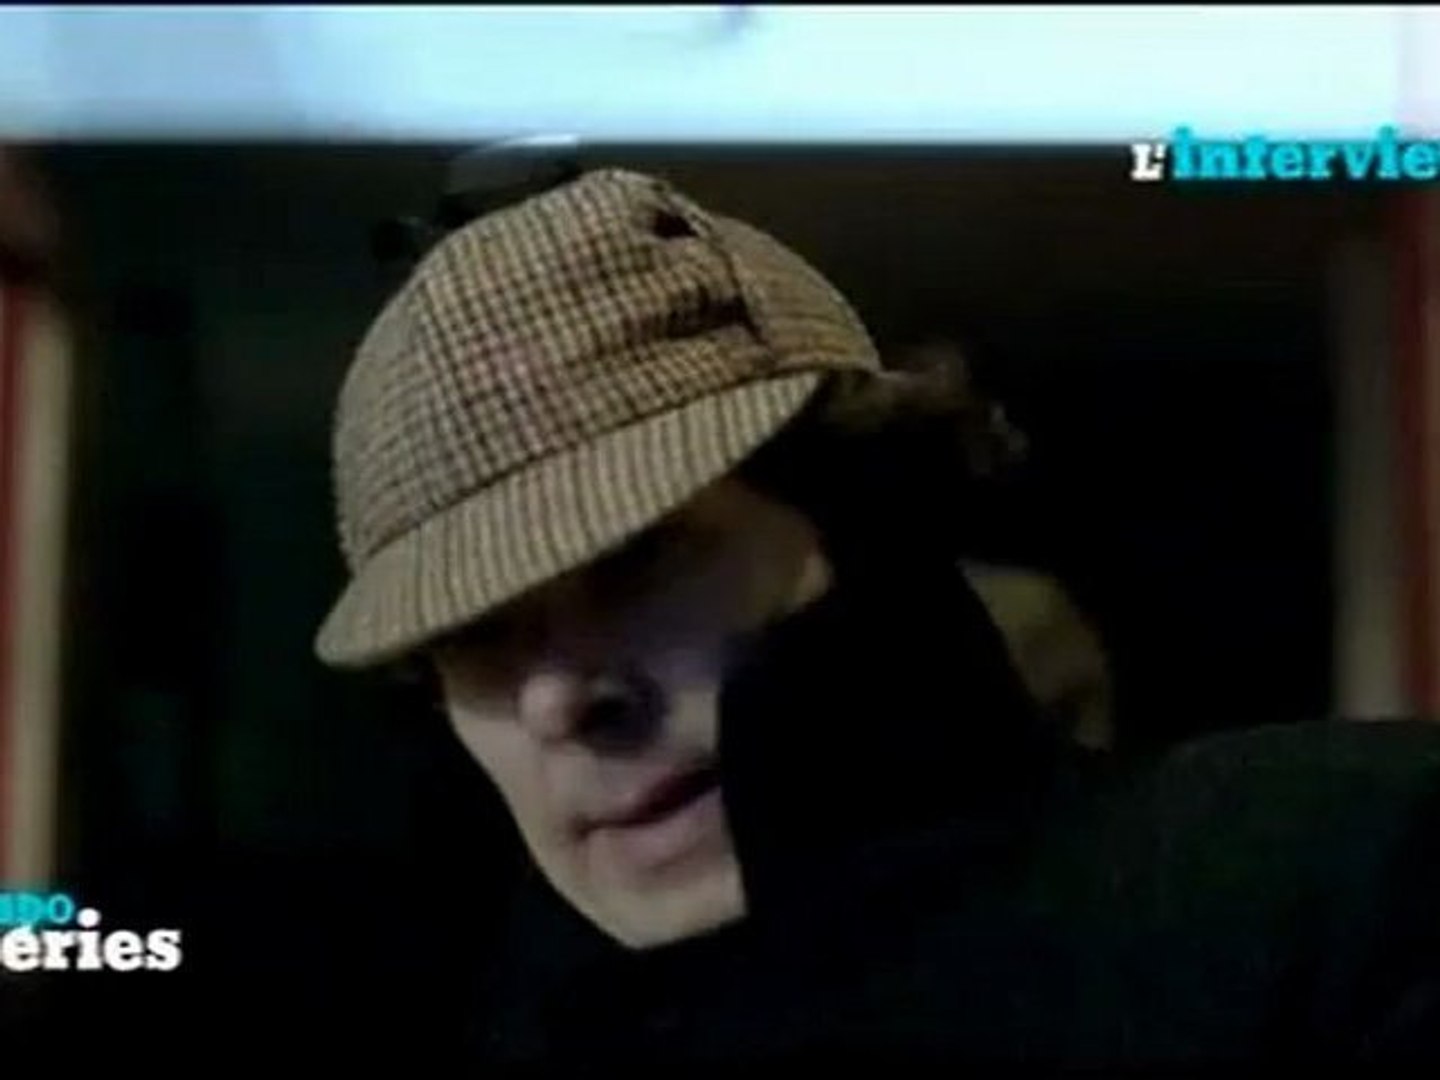 Steven Moffat on Sherlock